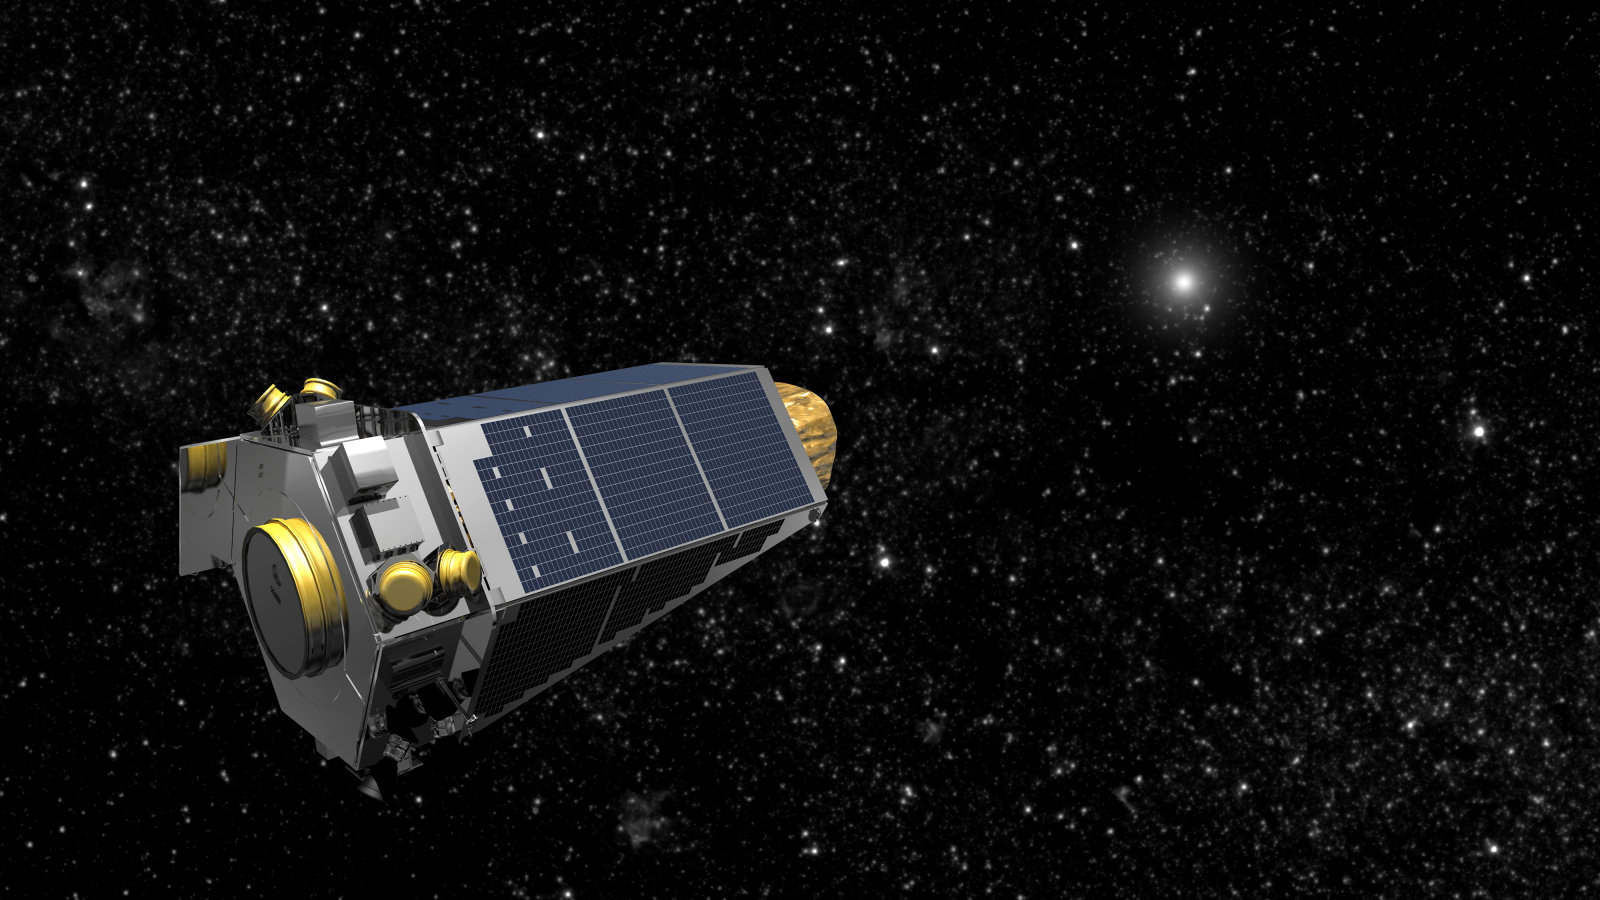 ケプラー宇宙望遠鏡があと数か月で燃料切れ 観測終了へ 打ち上げから9年 4500以上の系外惑星候補発見 Engadget 日本版